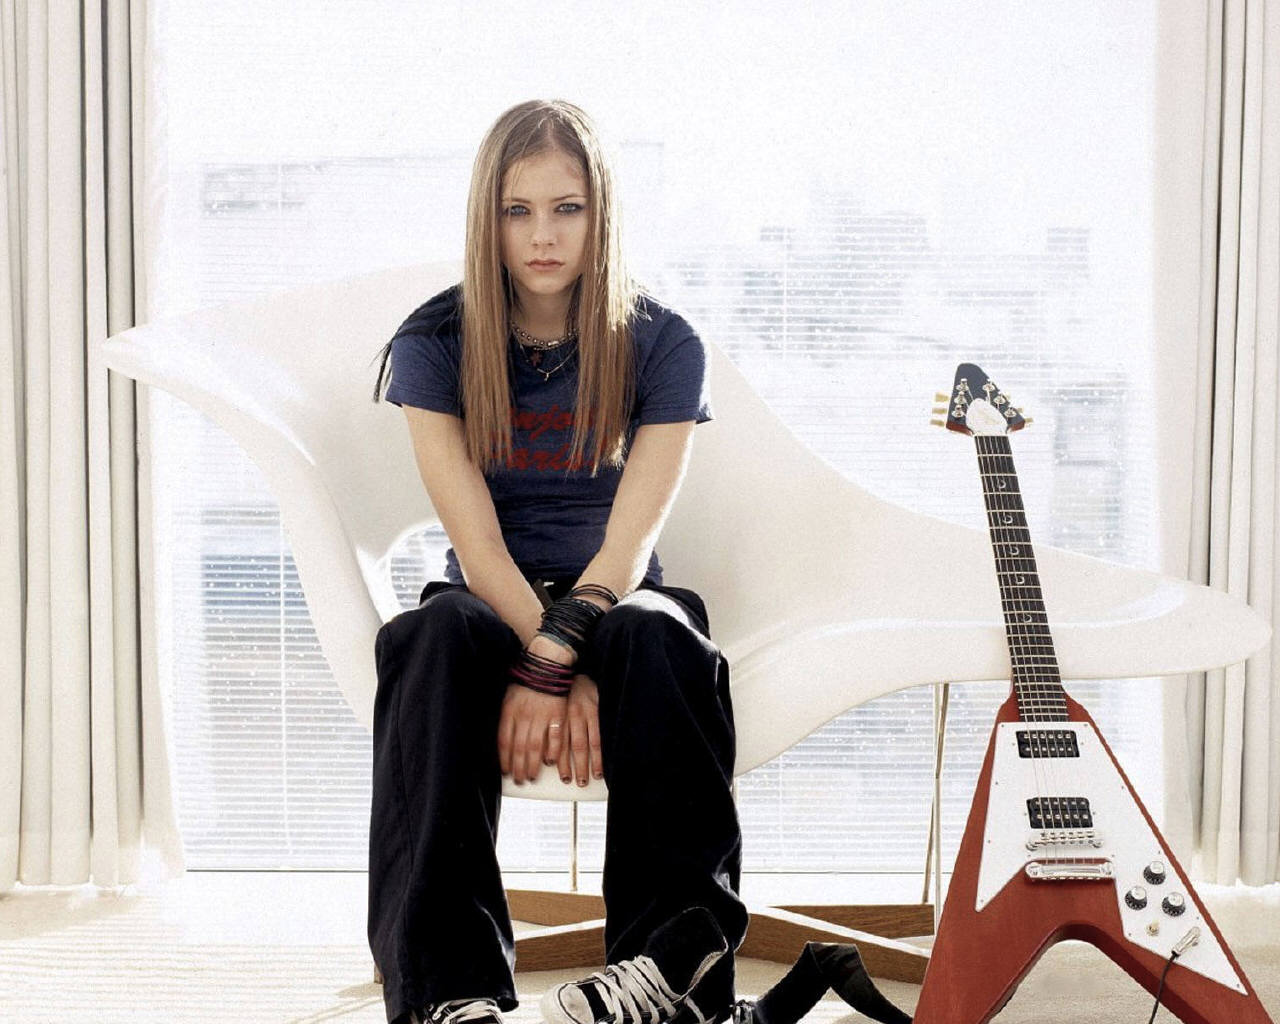 VINDICATED I AM SELFISH: Lyric Unwanted - Avril Lavigne1280 x 1024